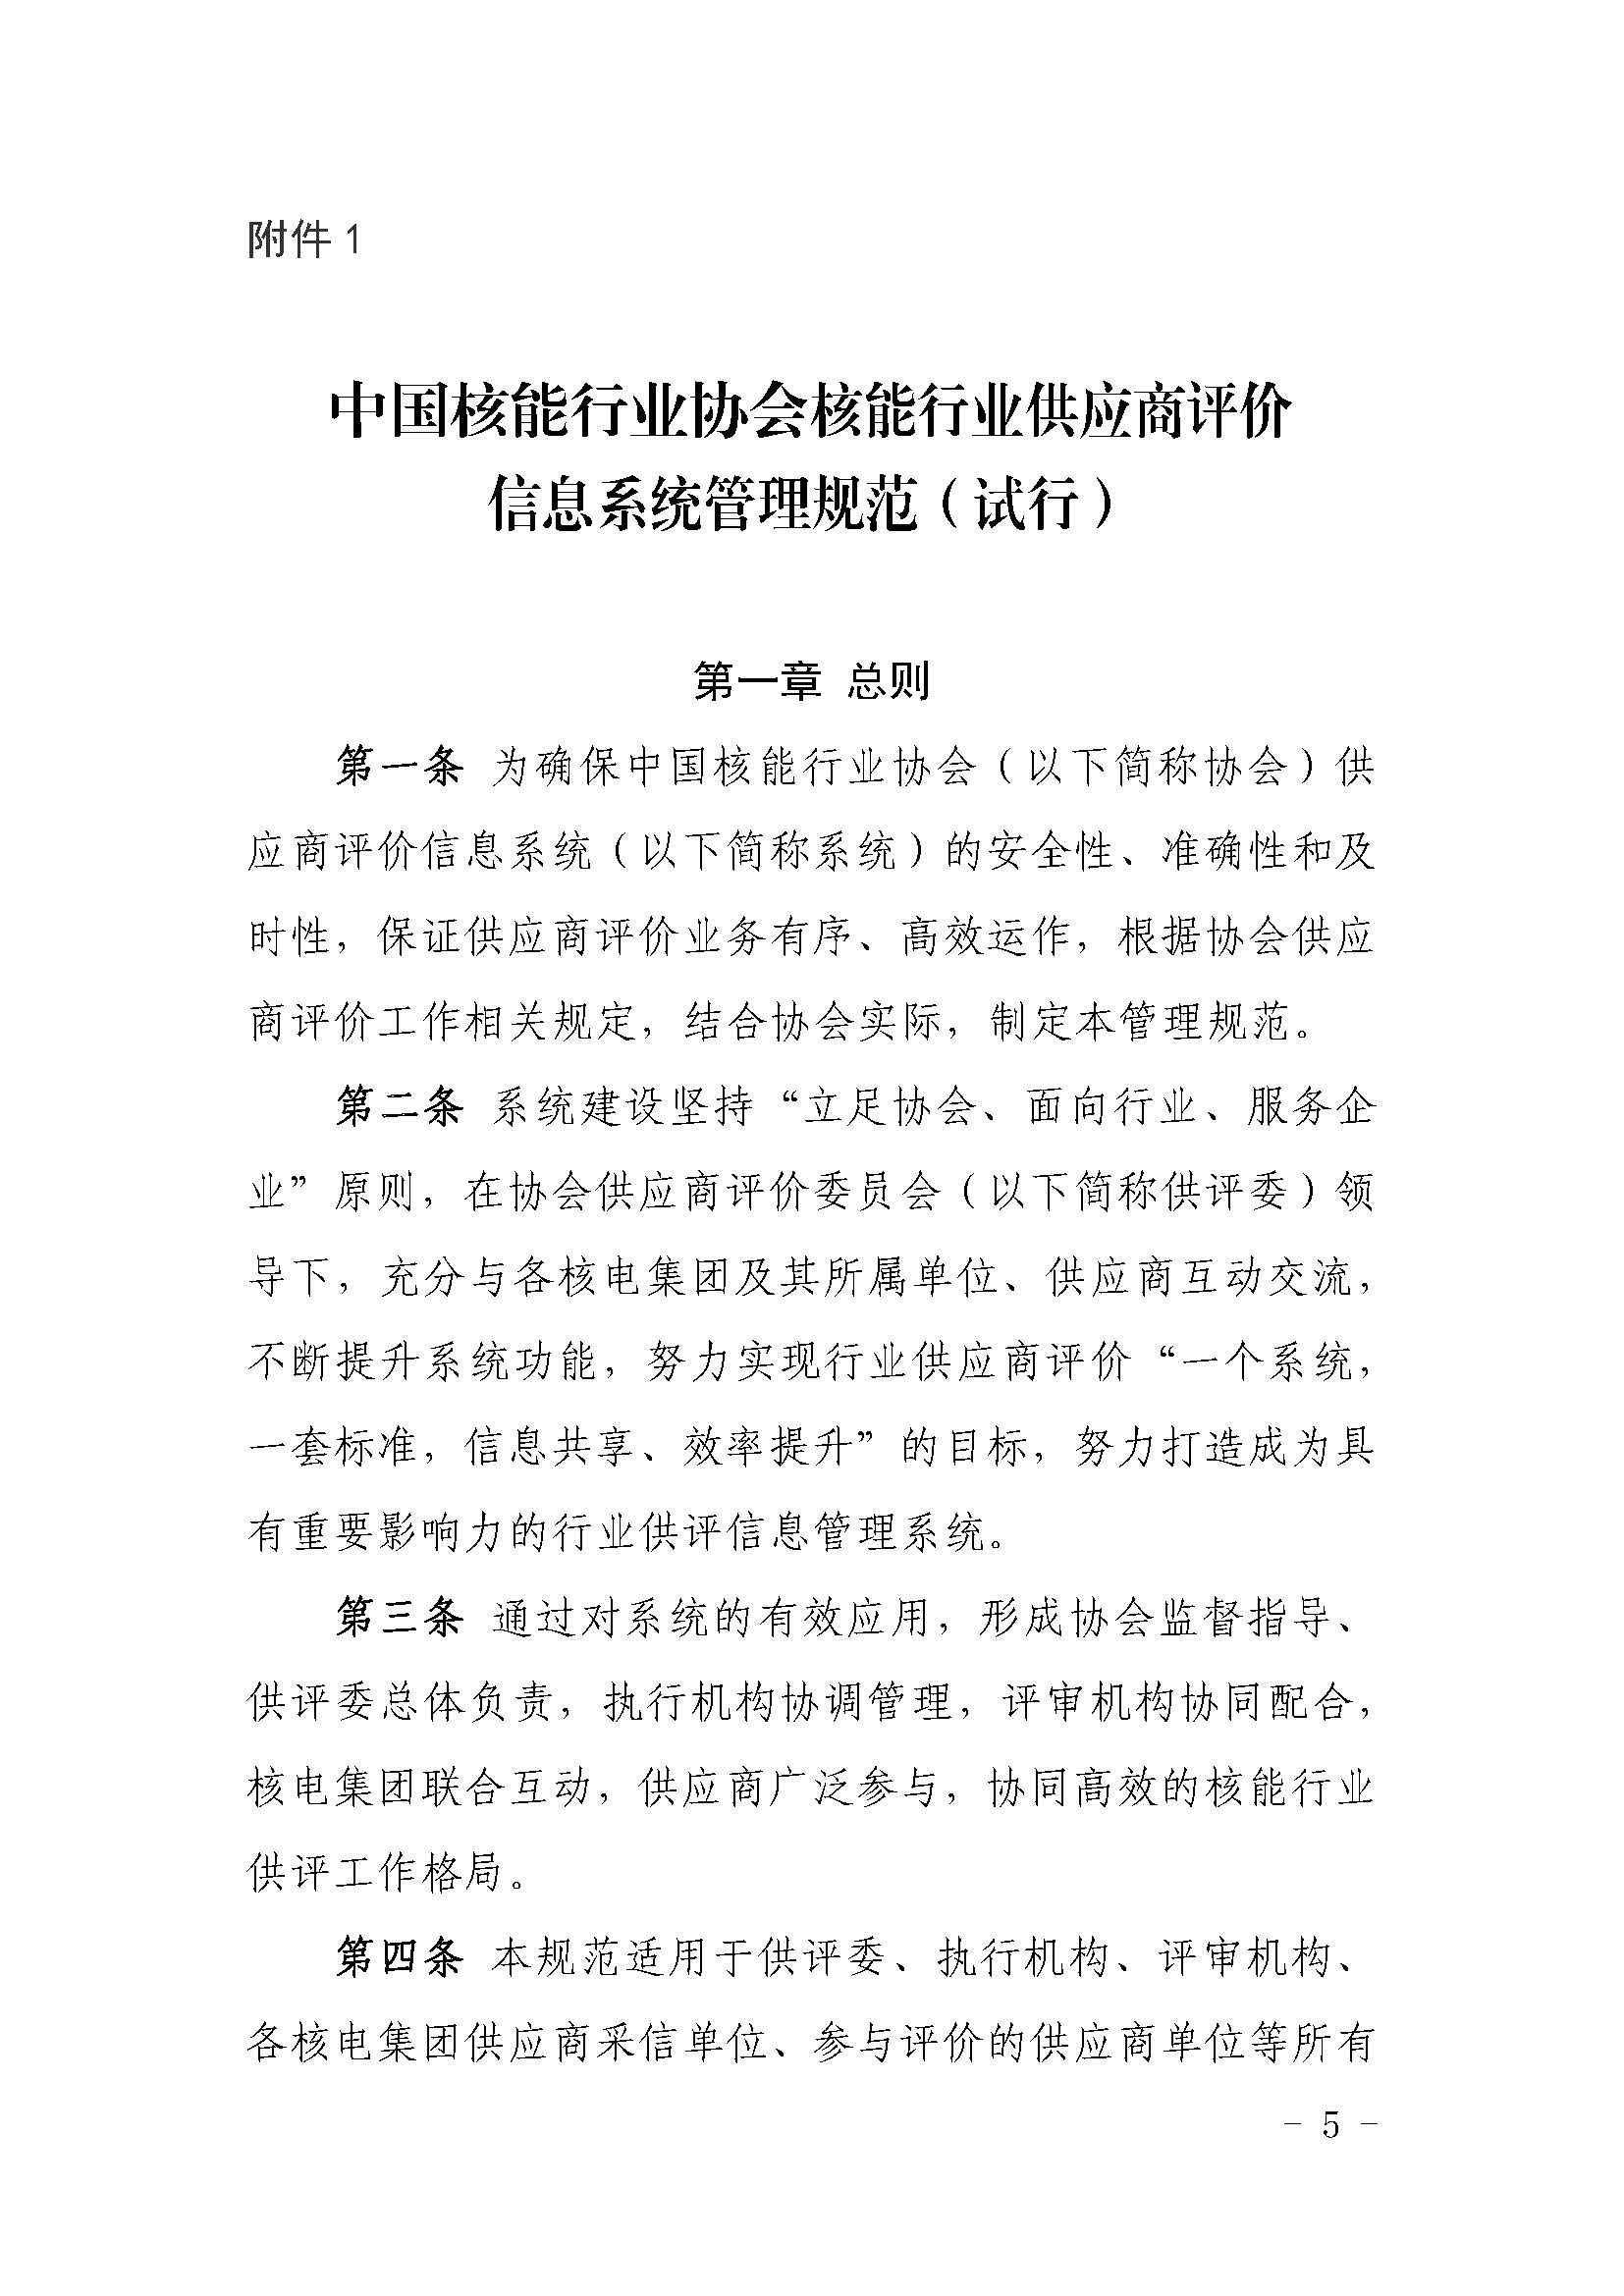 关于中国核能行业协会供应商评价信息系统上线试运行的通知_页面_05.jpg